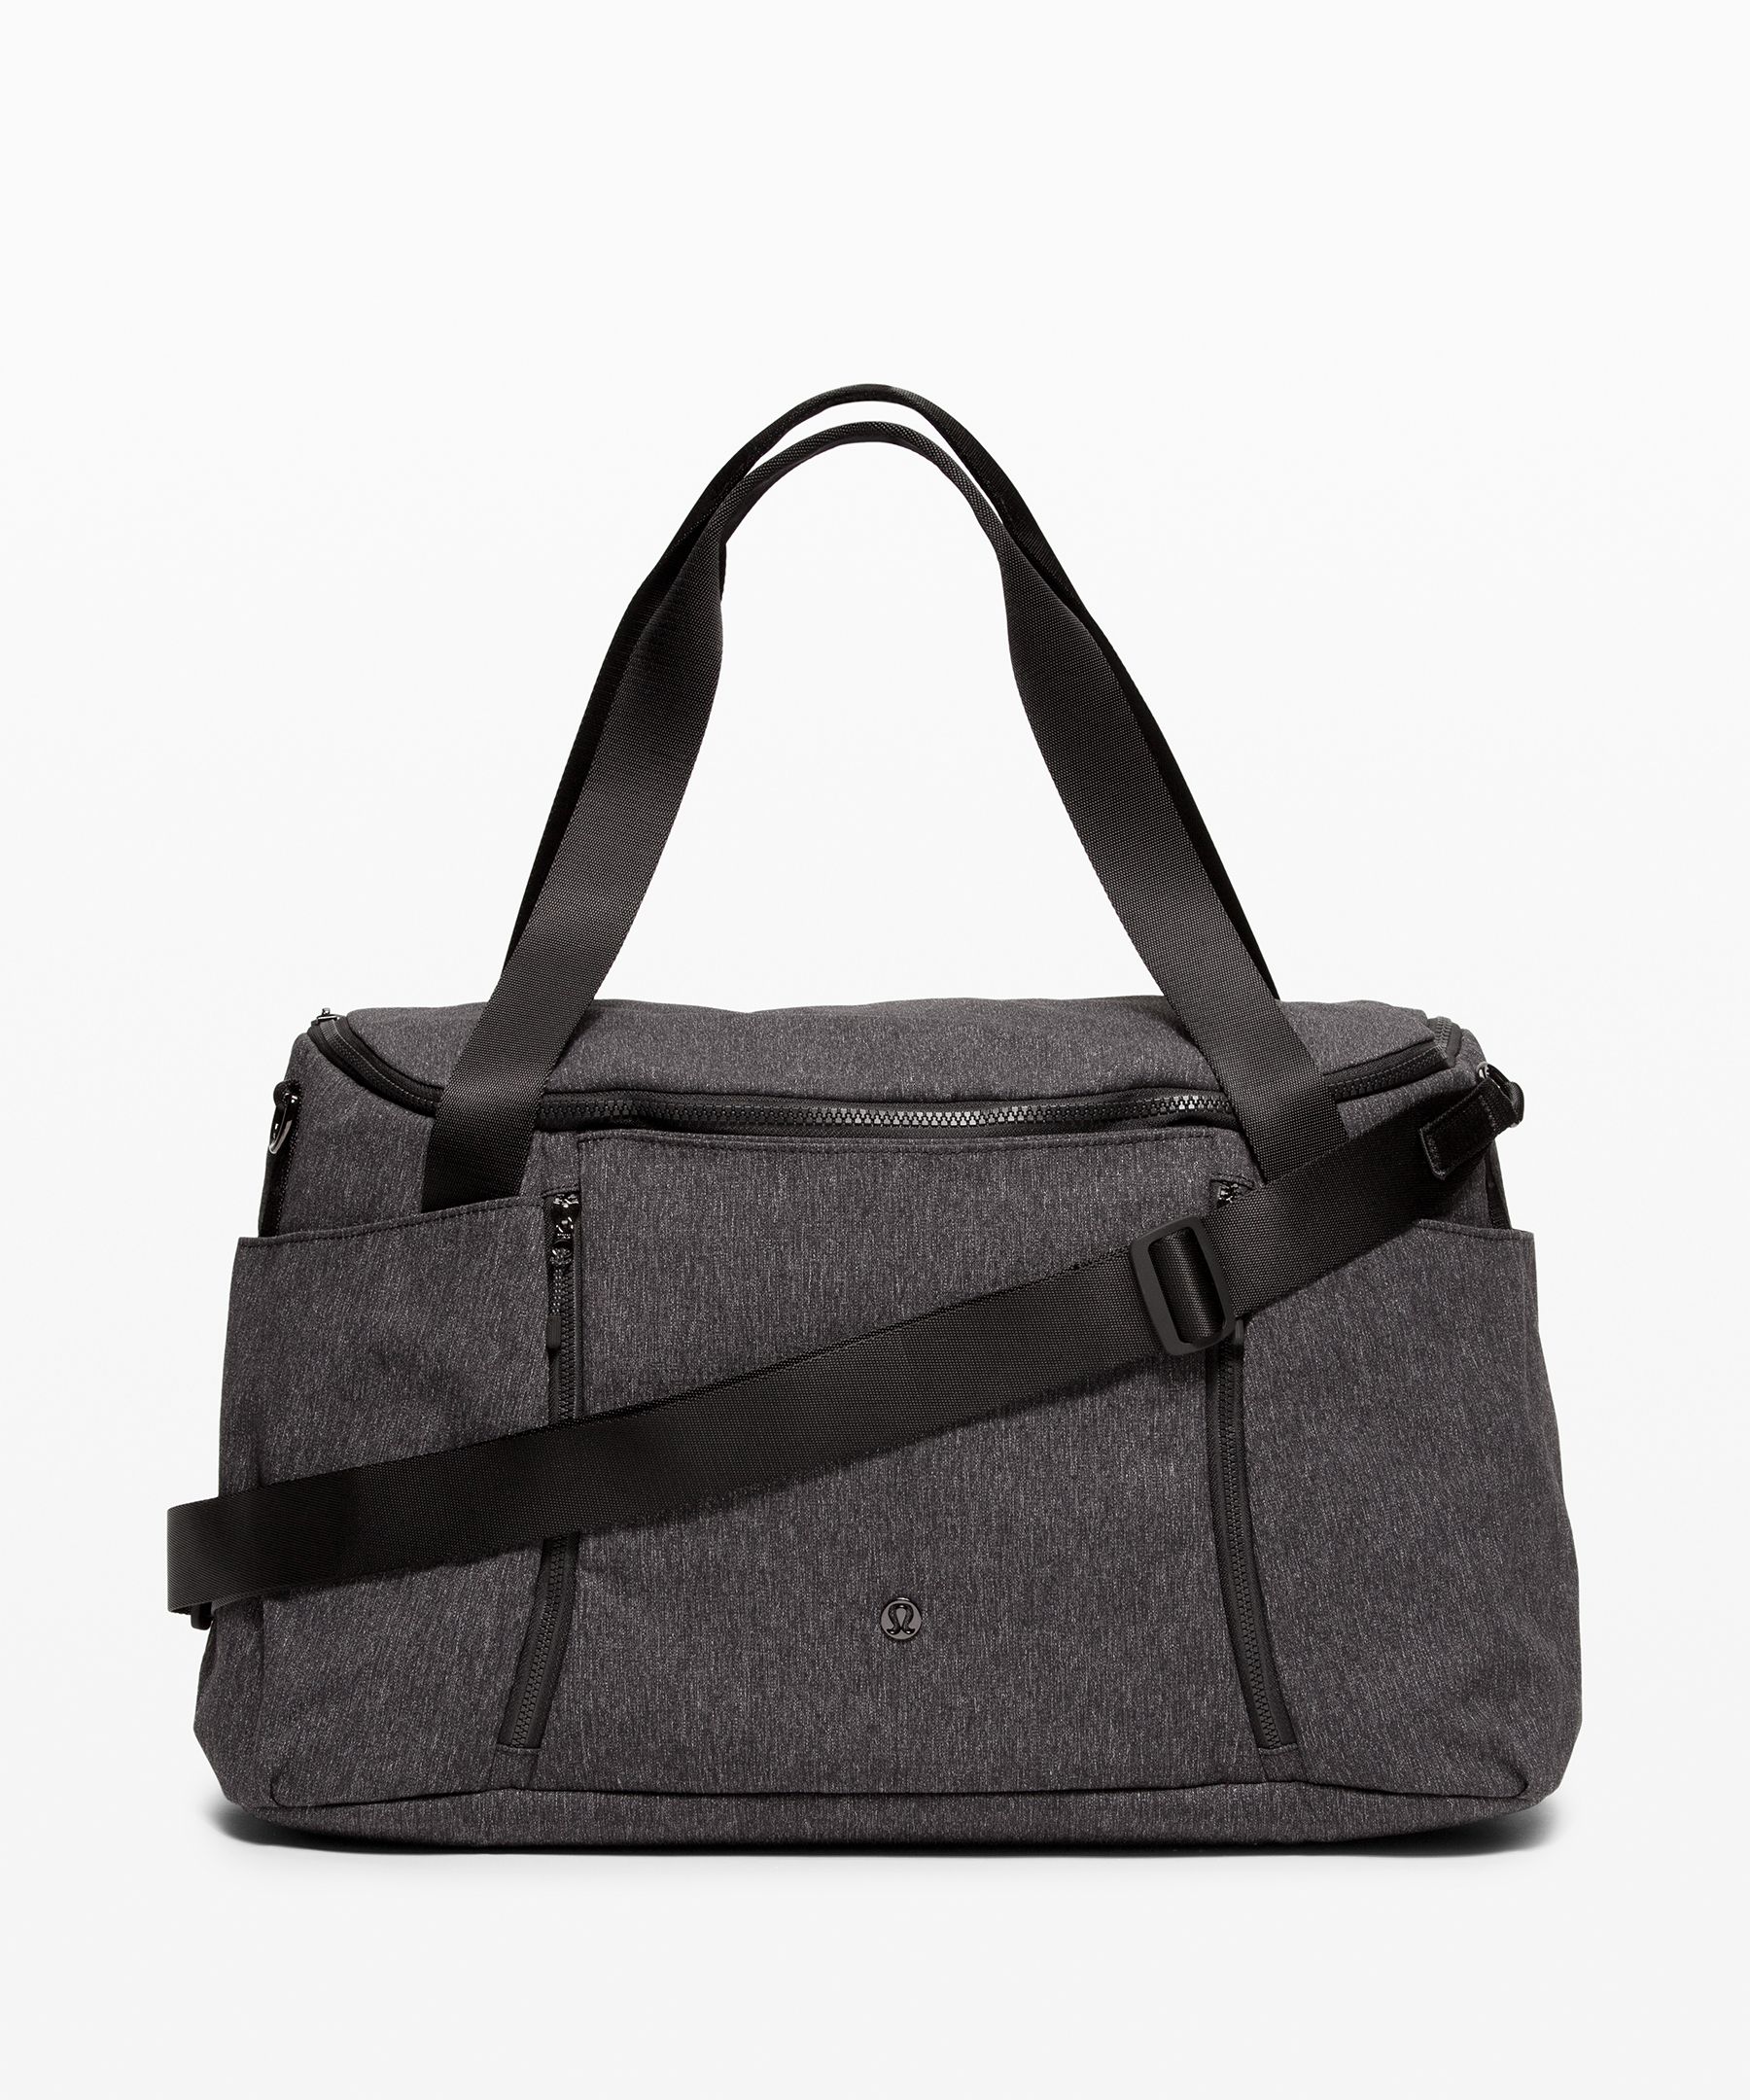 Lululemon Define Duffle Bag In Grey